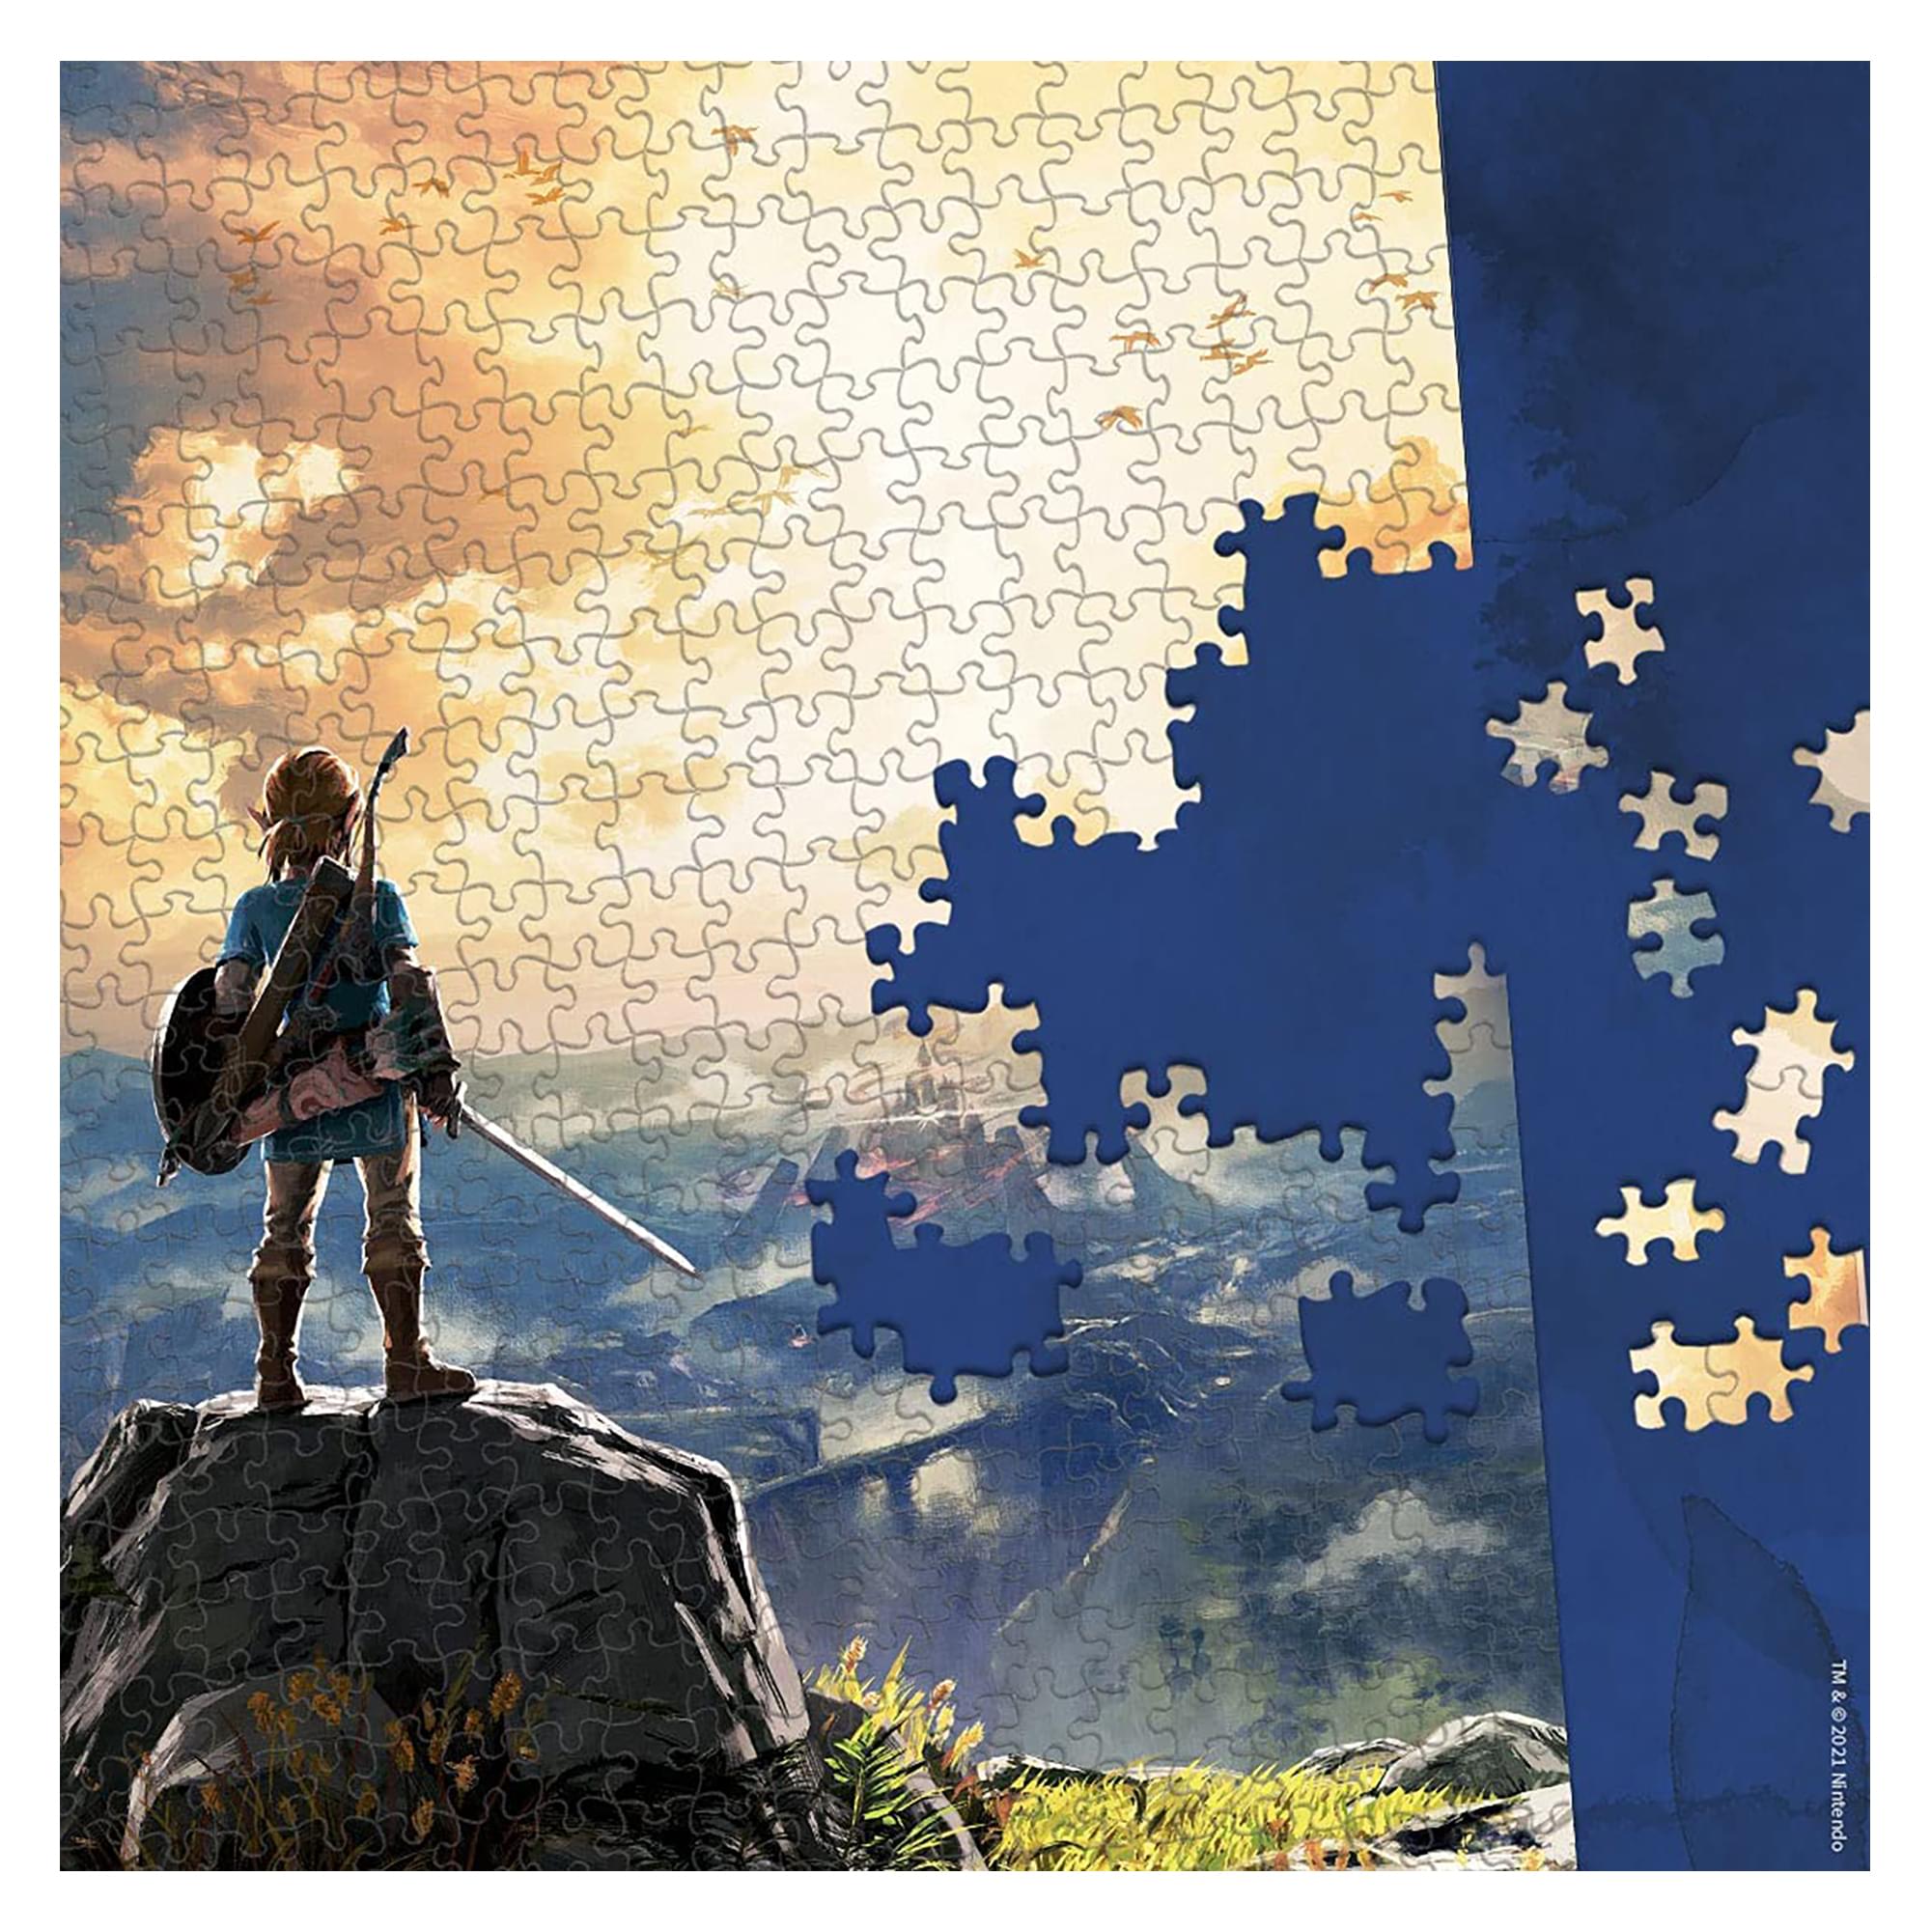 Legend of Zelda Hyrule Field 500 Piece Jigsaw Puzzle